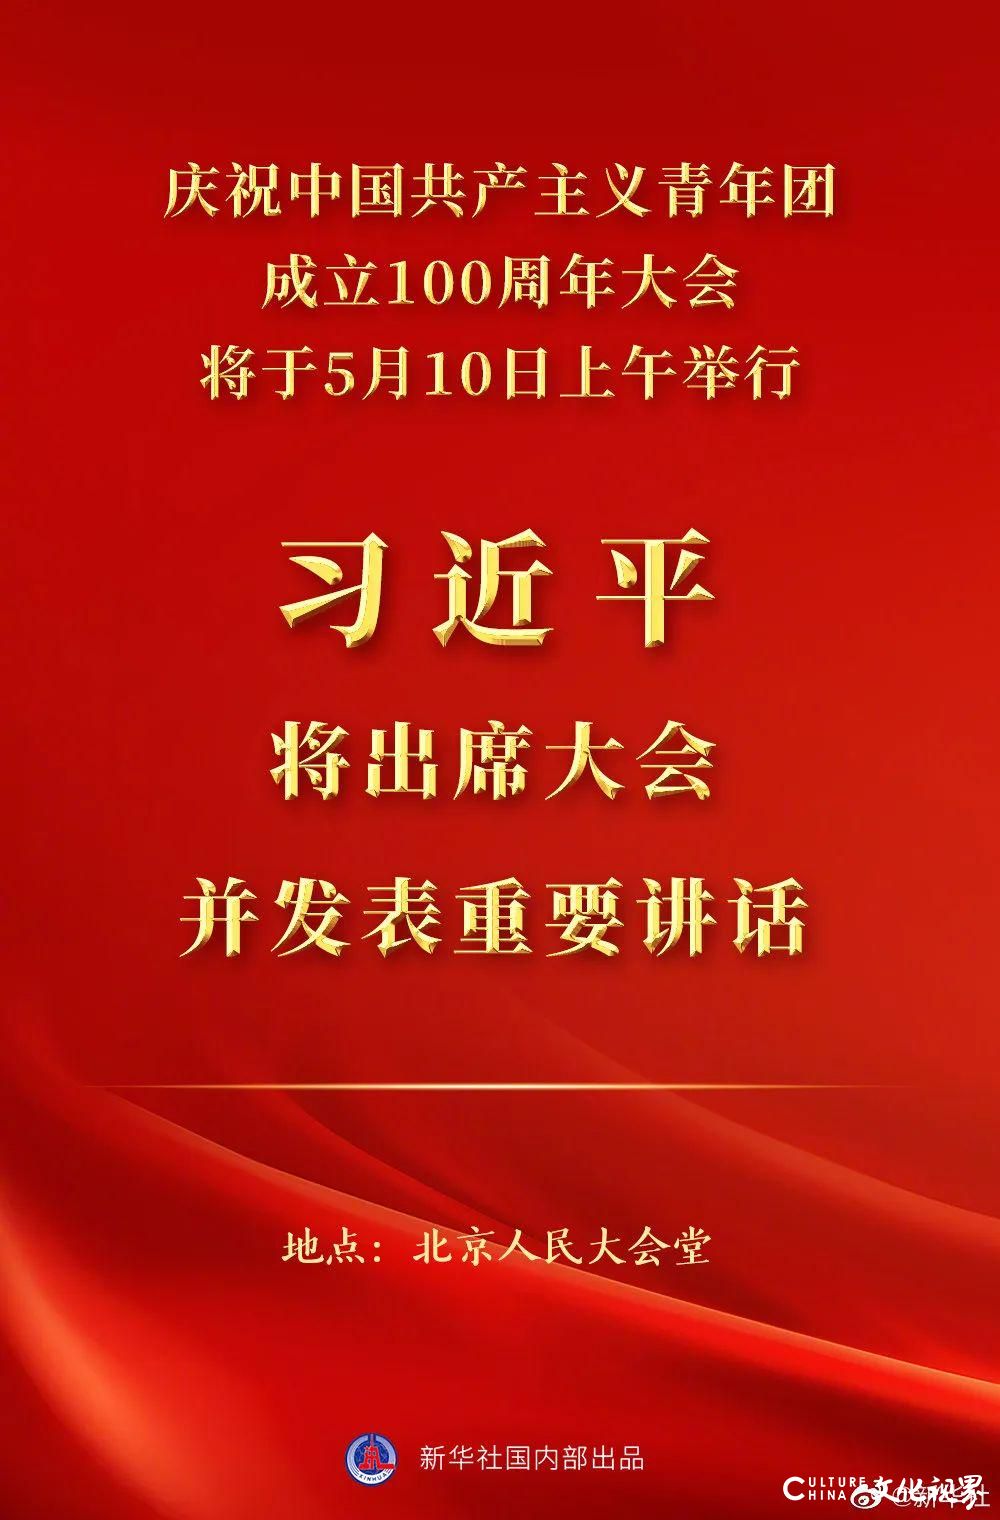 庆祝中国共产主义青年团成立100周年大会明日举行，习近平将出席并讲话